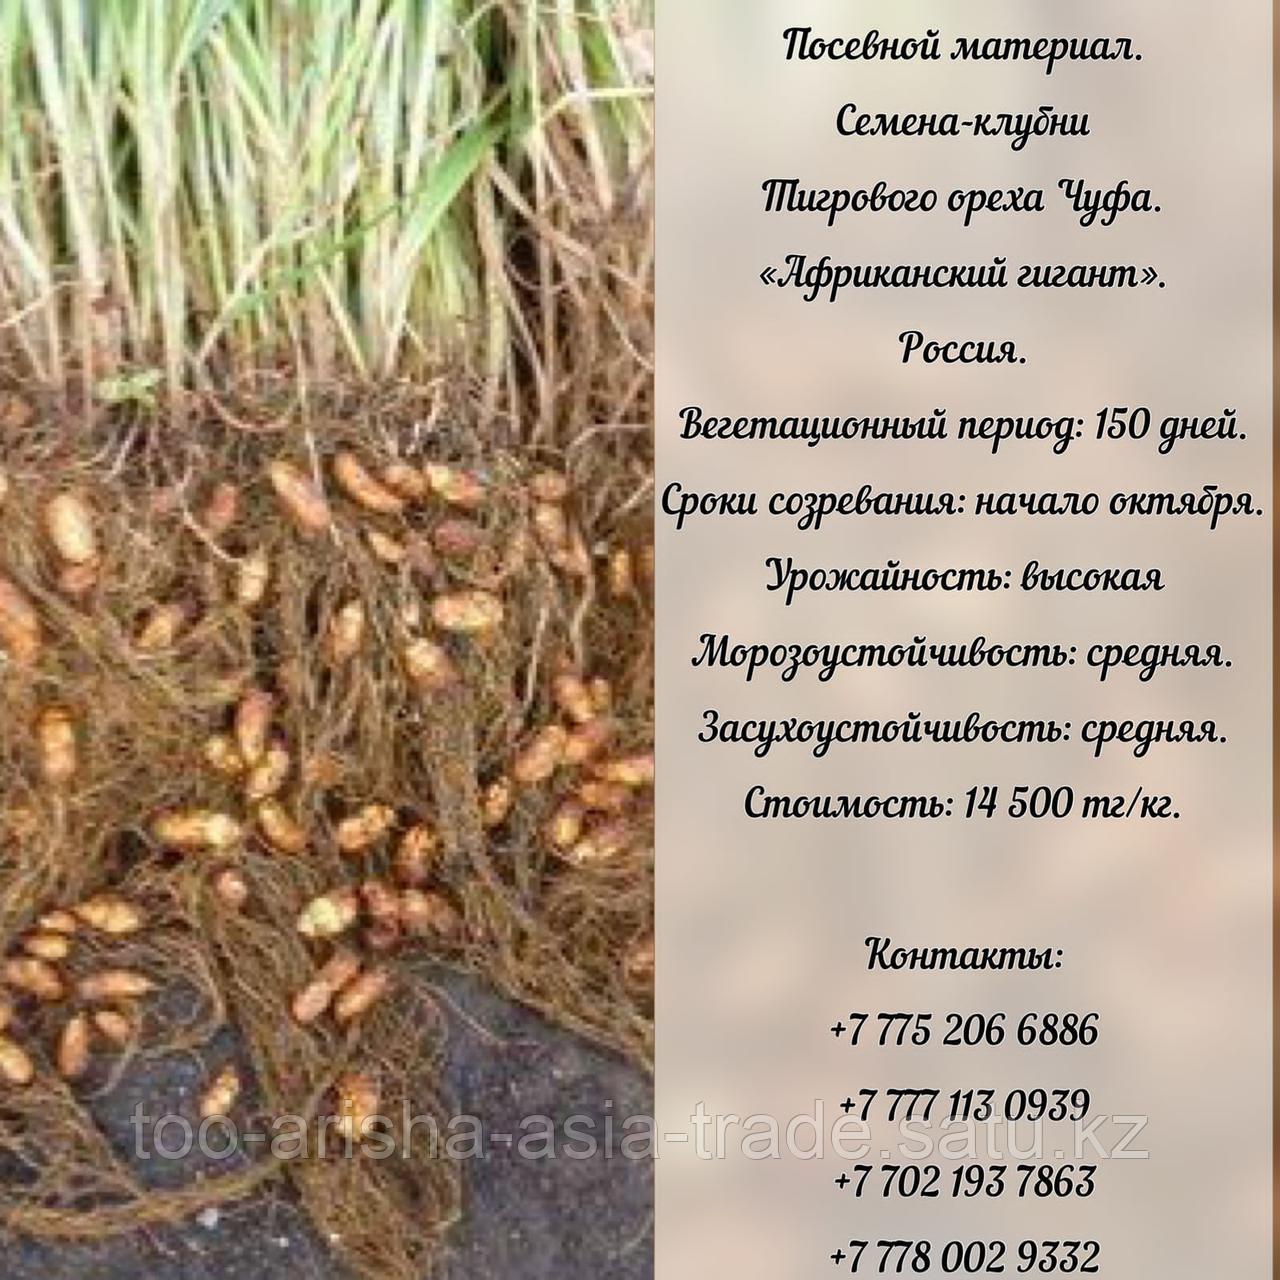 Семена-клубни ореха Чуфа "Африканский гигант" Россия